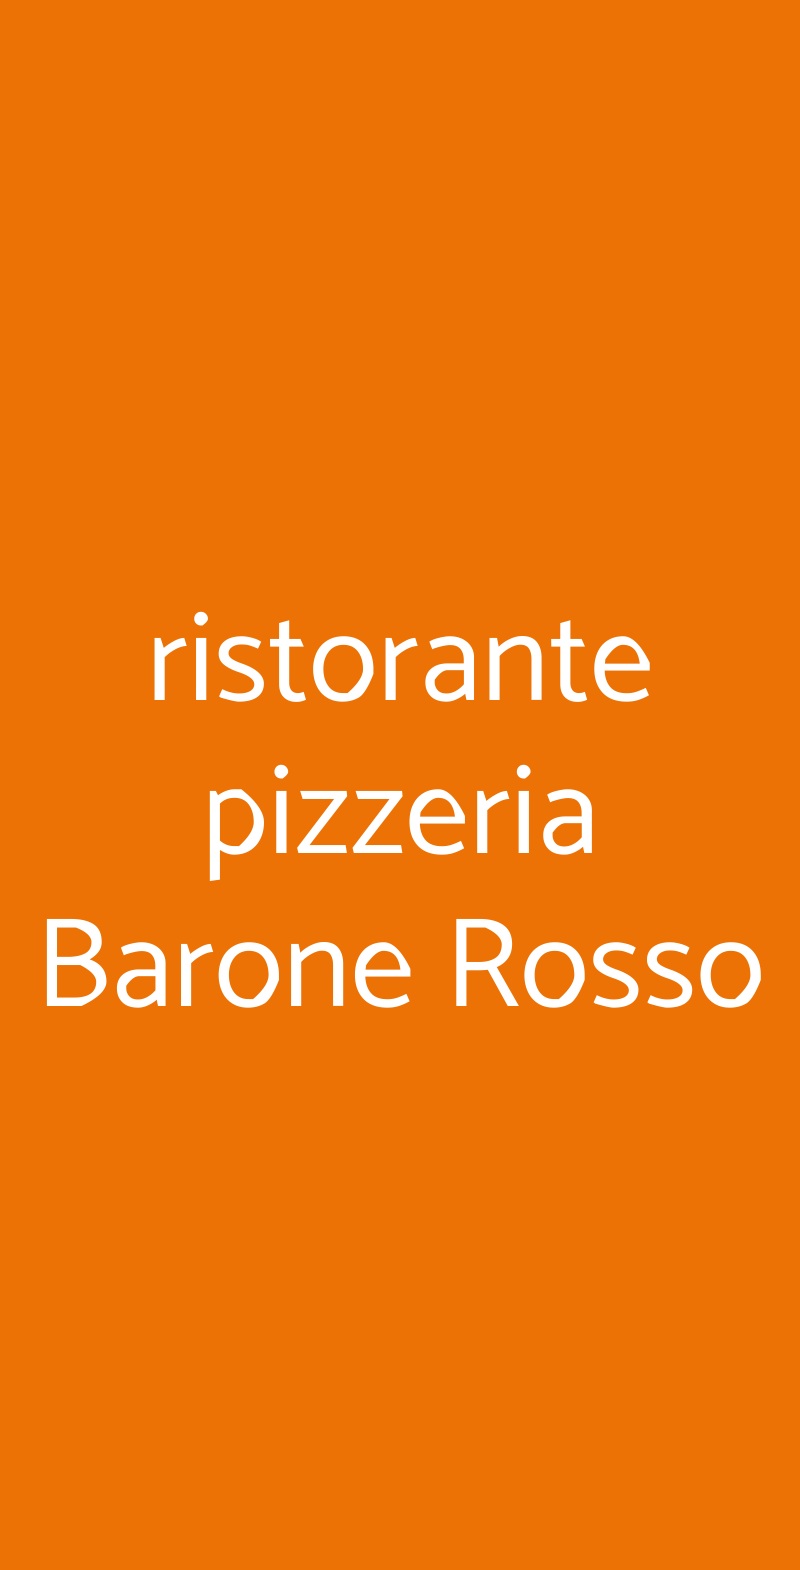 ristorante pizzeria Barone Rosso Ripatransone menù 1 pagina